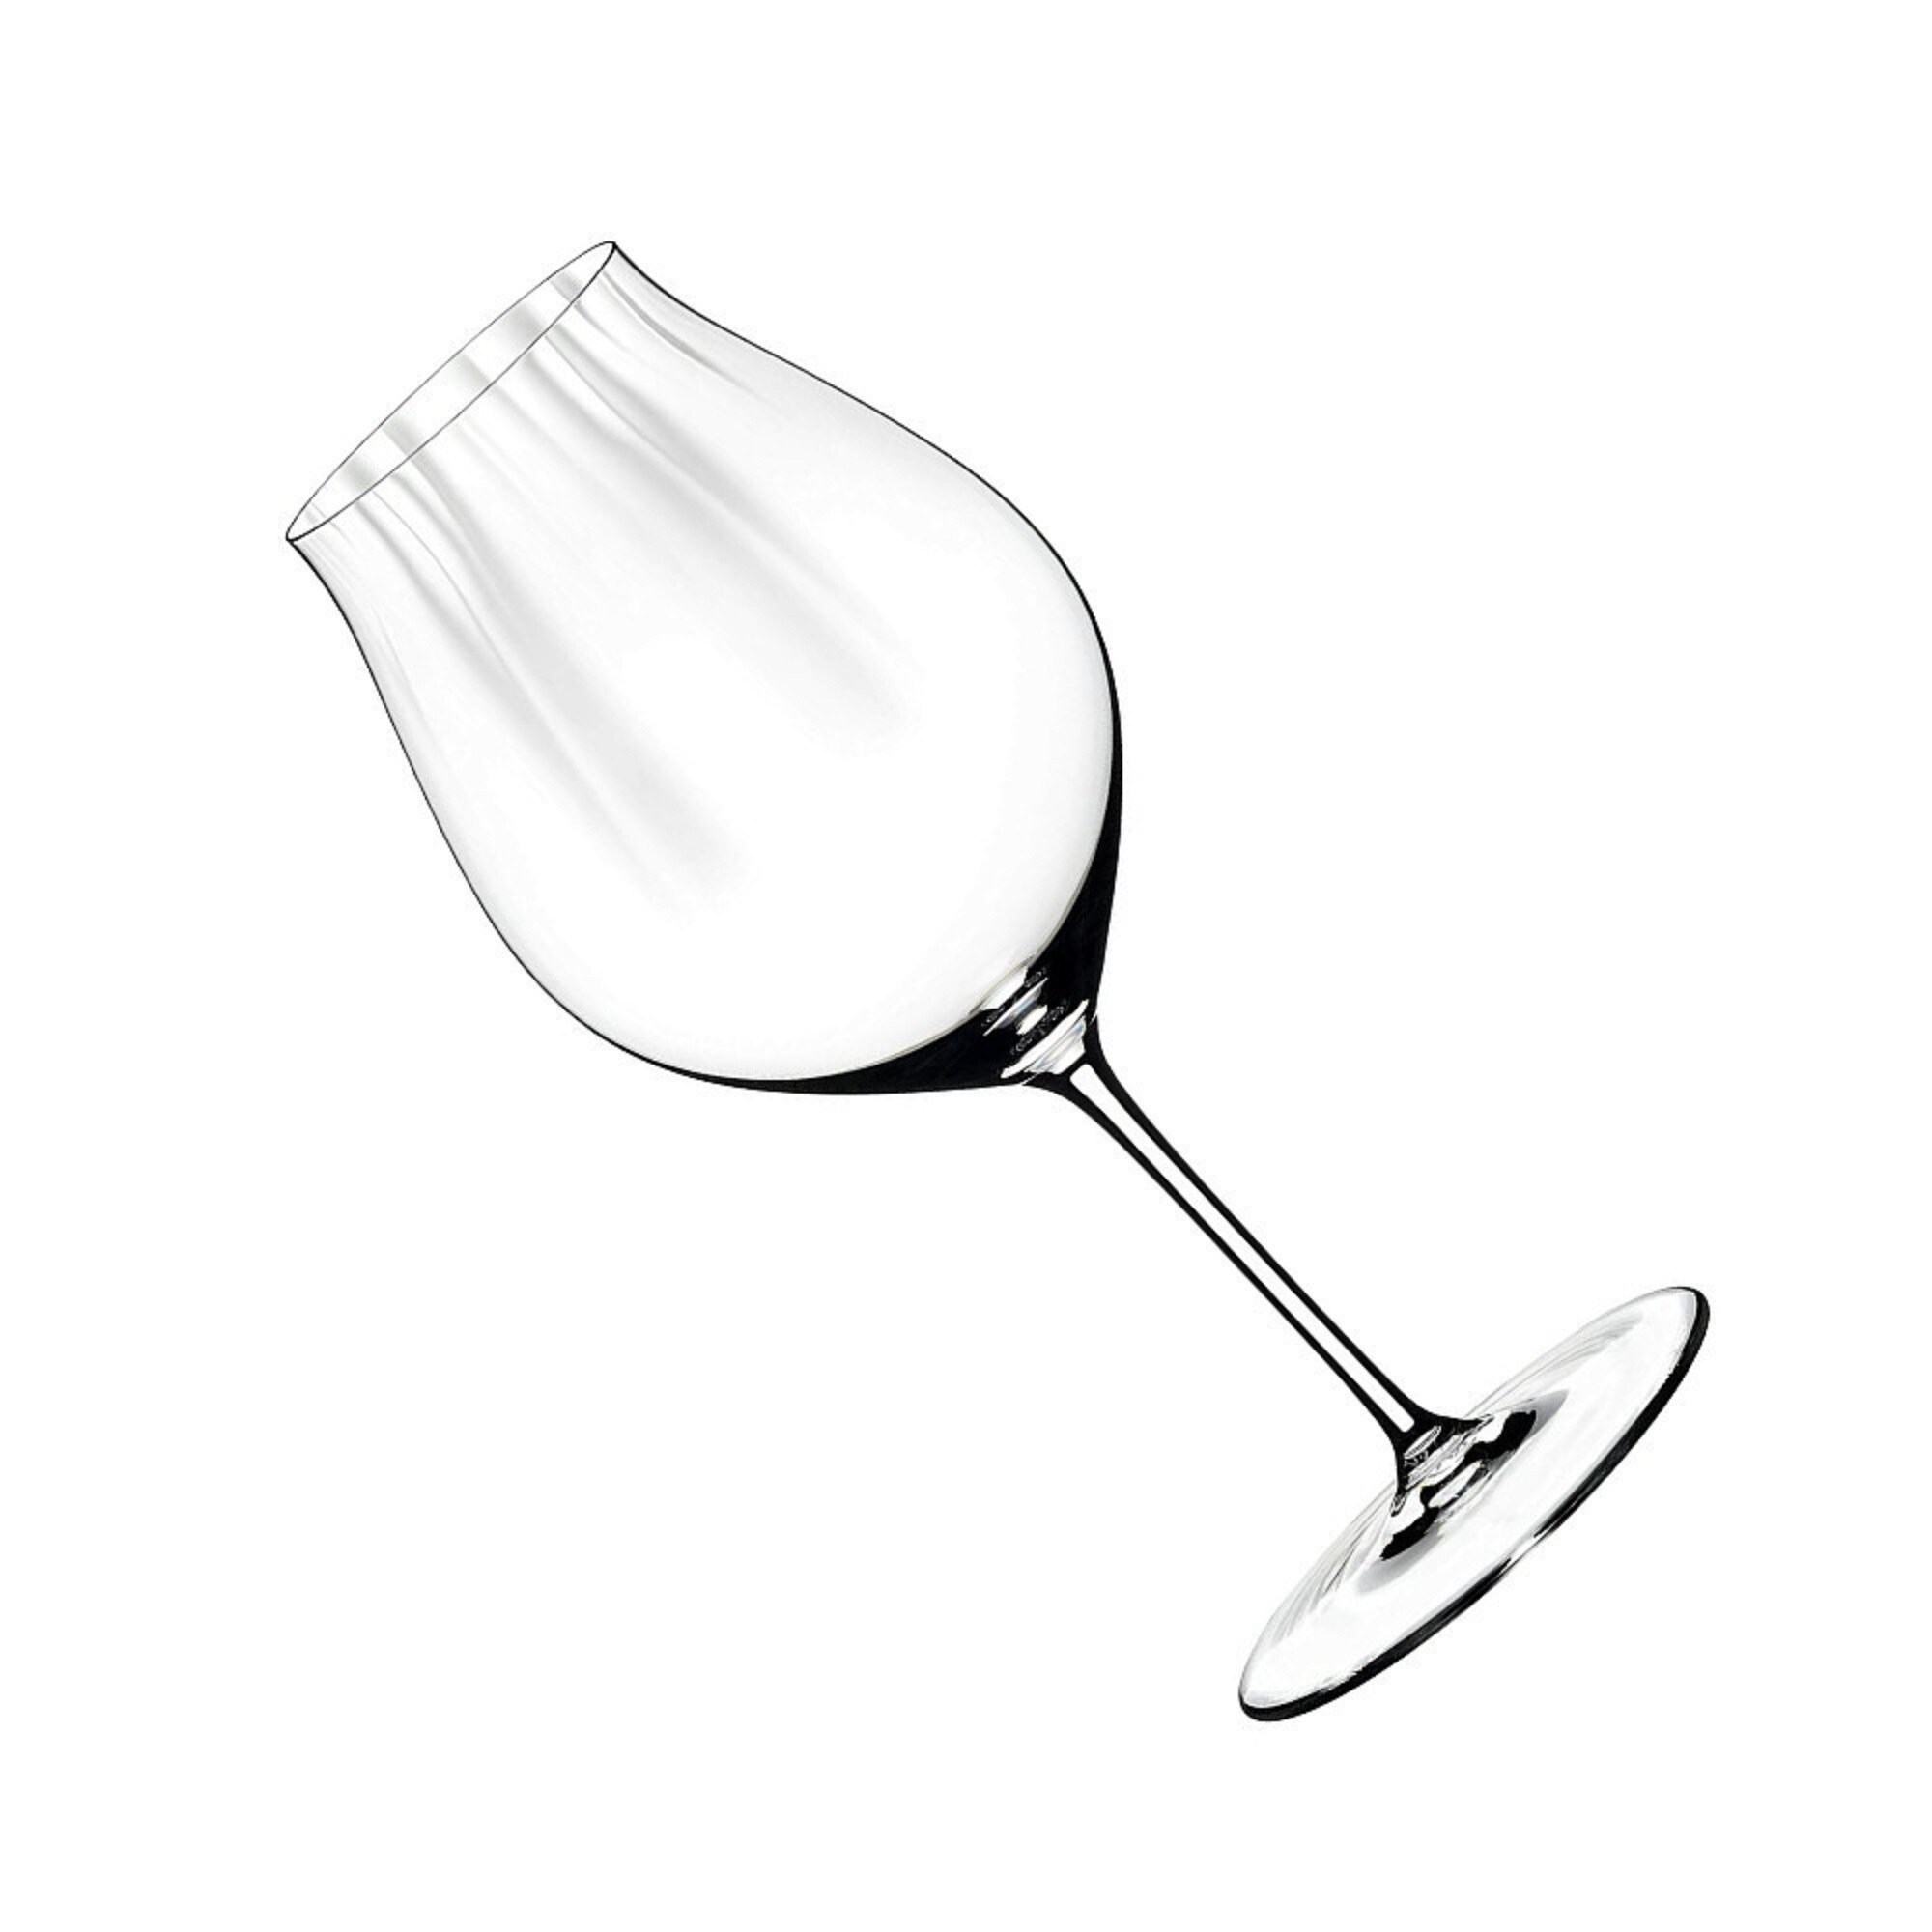 Schott Zwiesel Pure Tour Pinot Noir Glass 24-Oz. + Reviews